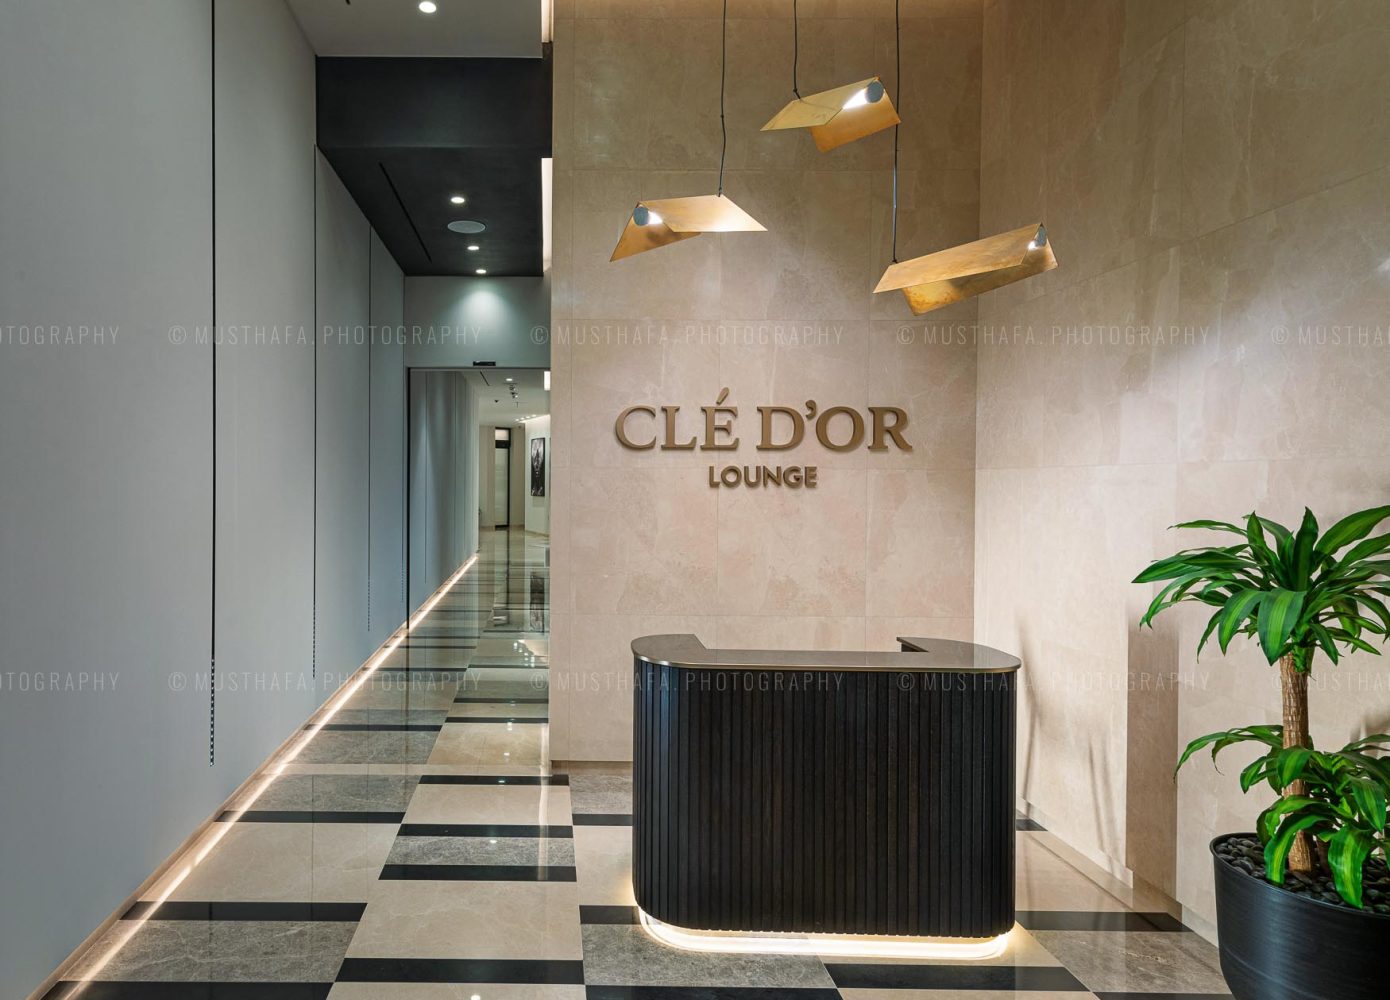 CleDor Luxury Lounge Mall of Emirates interior photography Dubai Photographer Kuwait Abu Dhabi UAE Creative Architecture 06